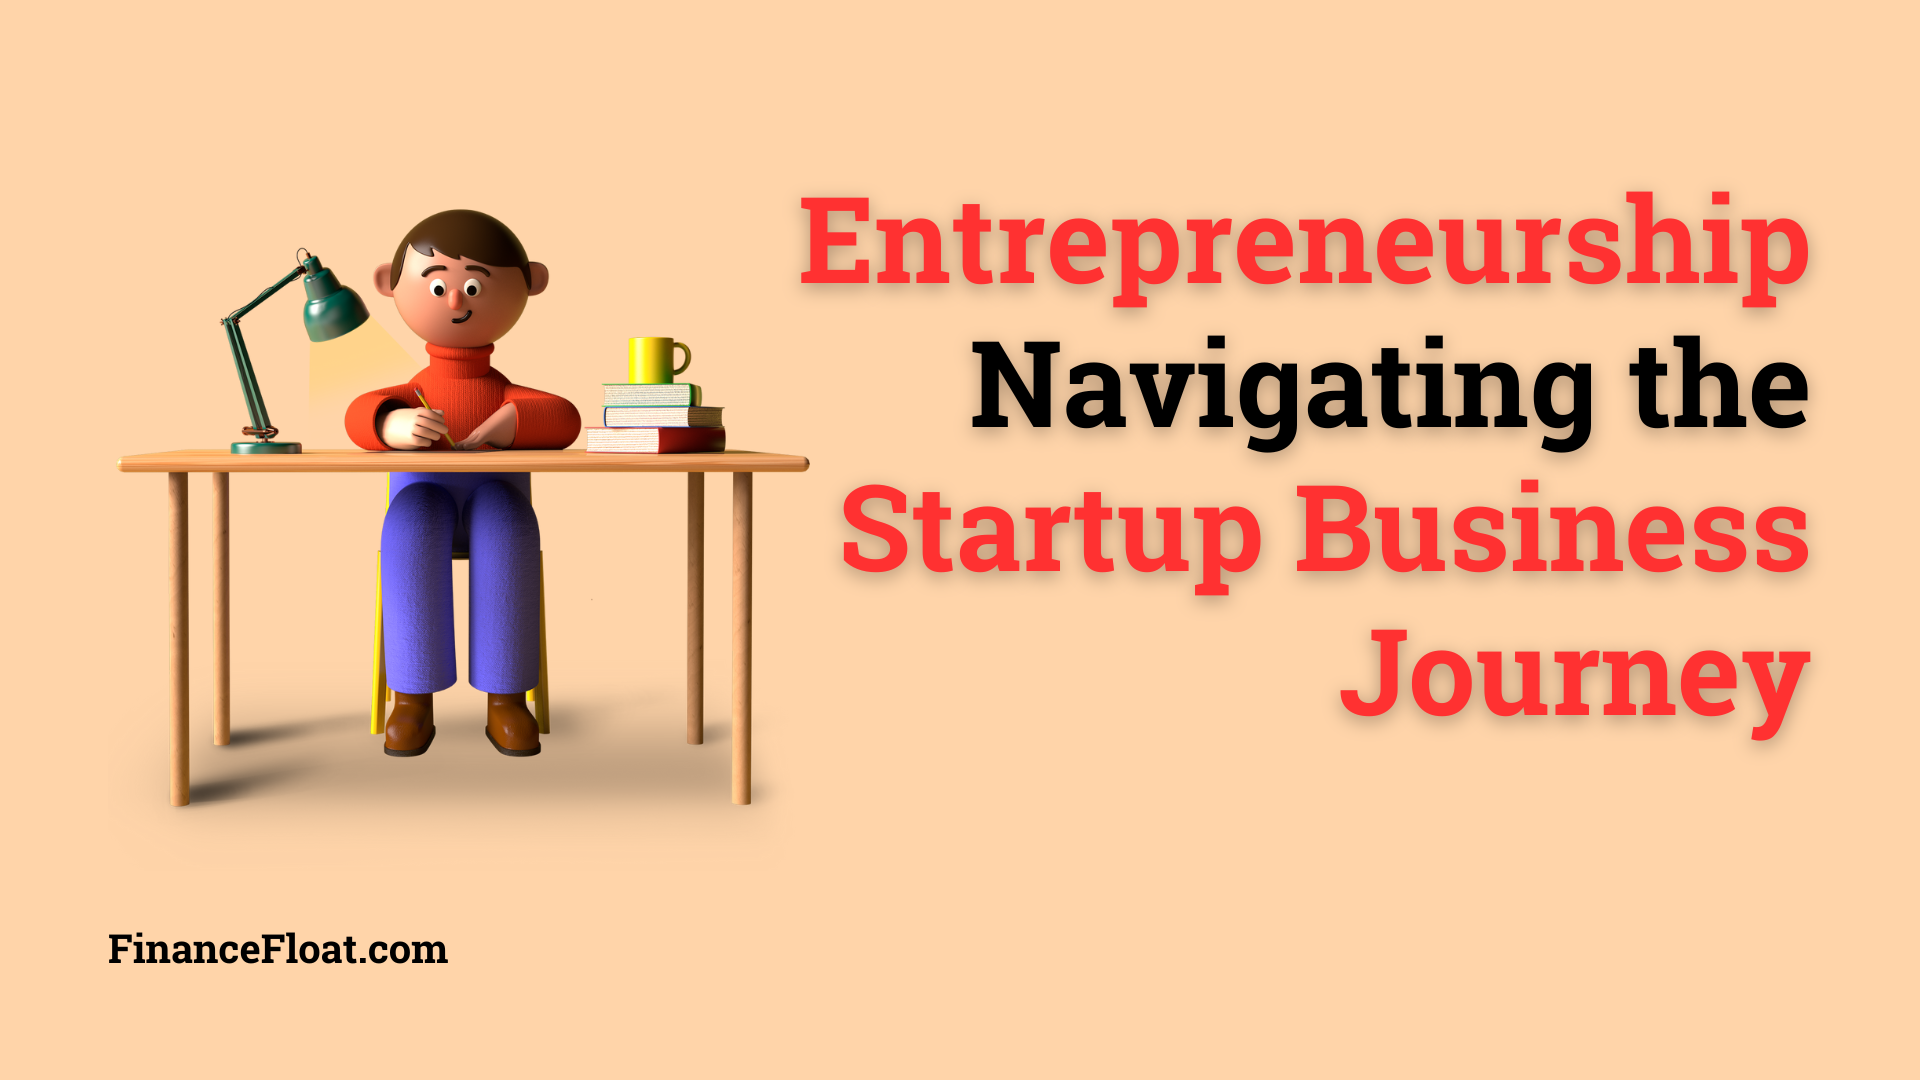 Entrepreneurship Navigating the Startup Business Journey